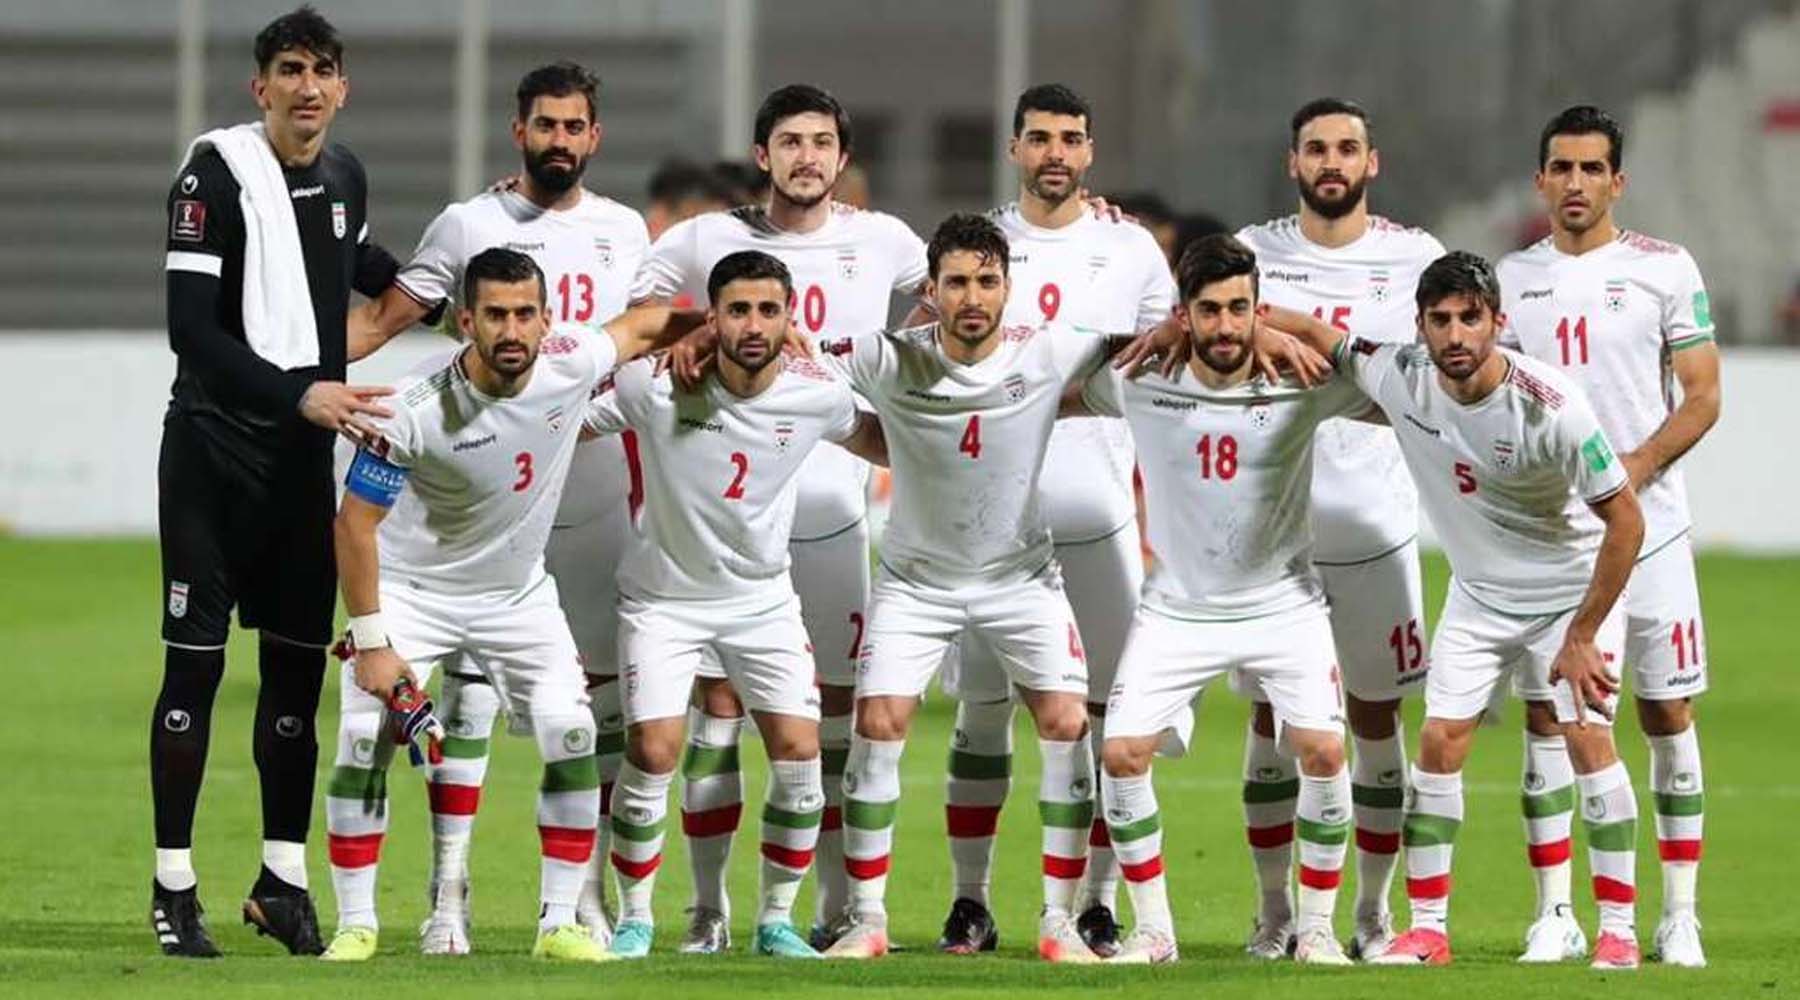 شرط بندی بازی انگلیس و ایران جام جهانی ۲۰۲۲ قطر با ضریب بالا